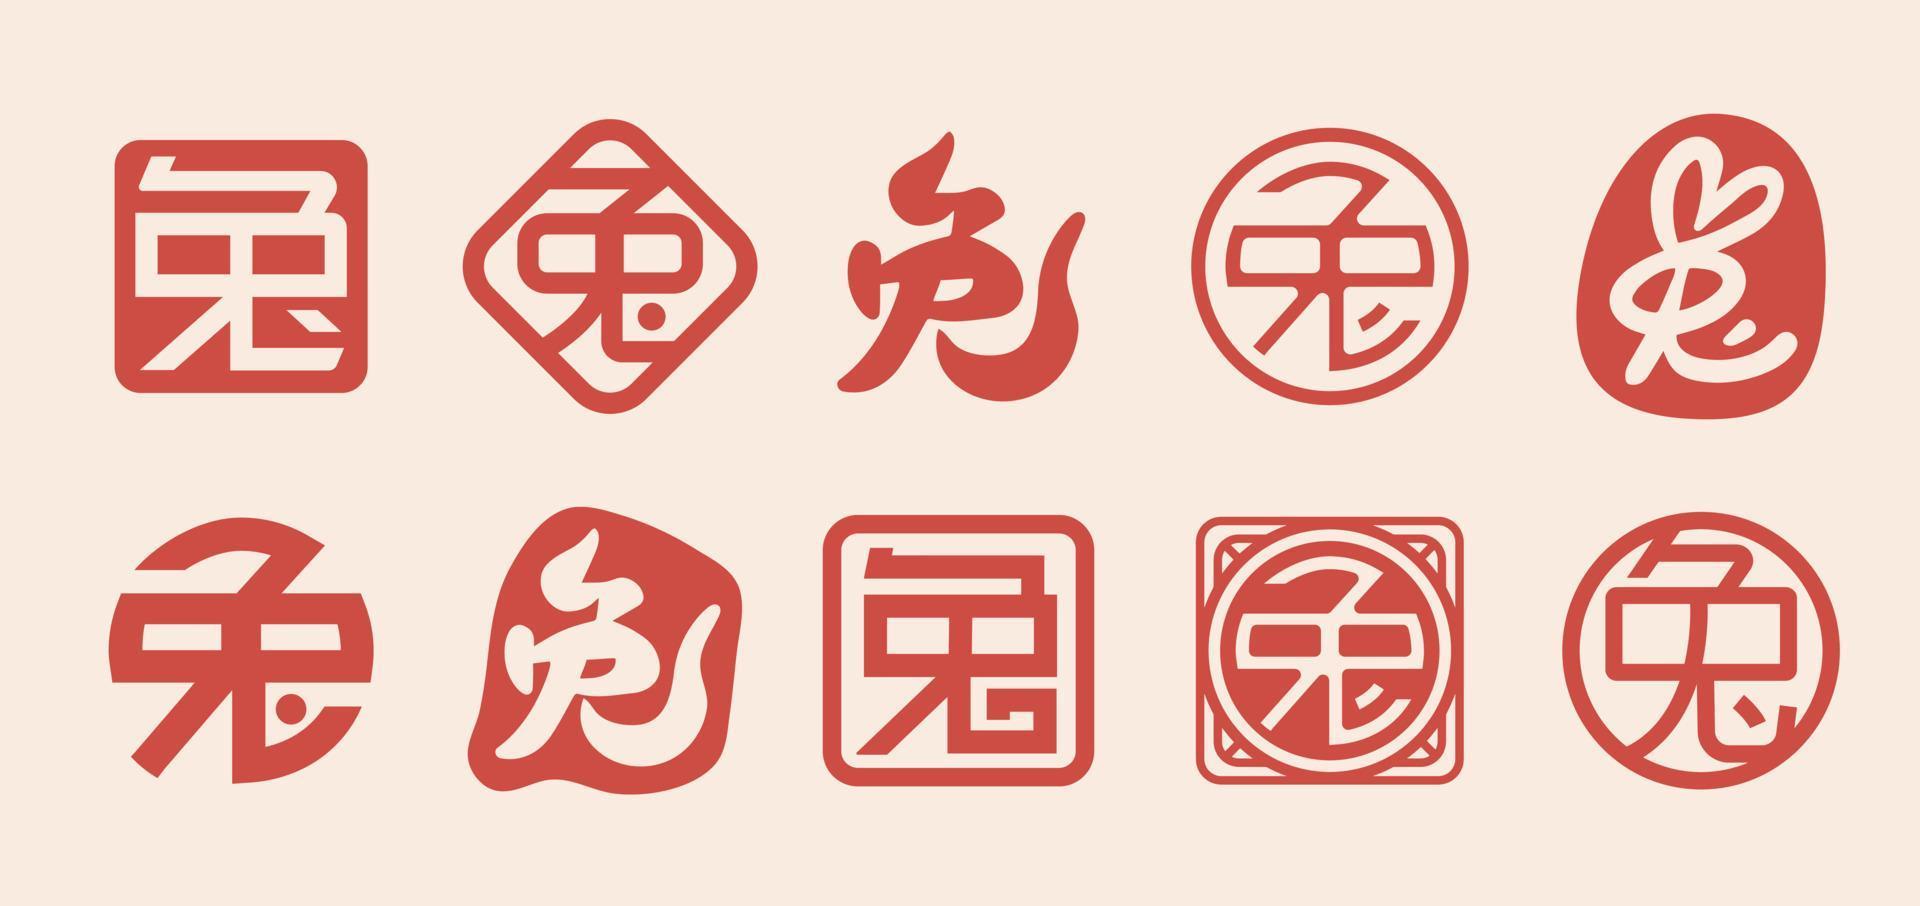 carimbo de selo de estilo tradicional de caracteres chineses para coelho de tradução chinesa de ano novo vetor